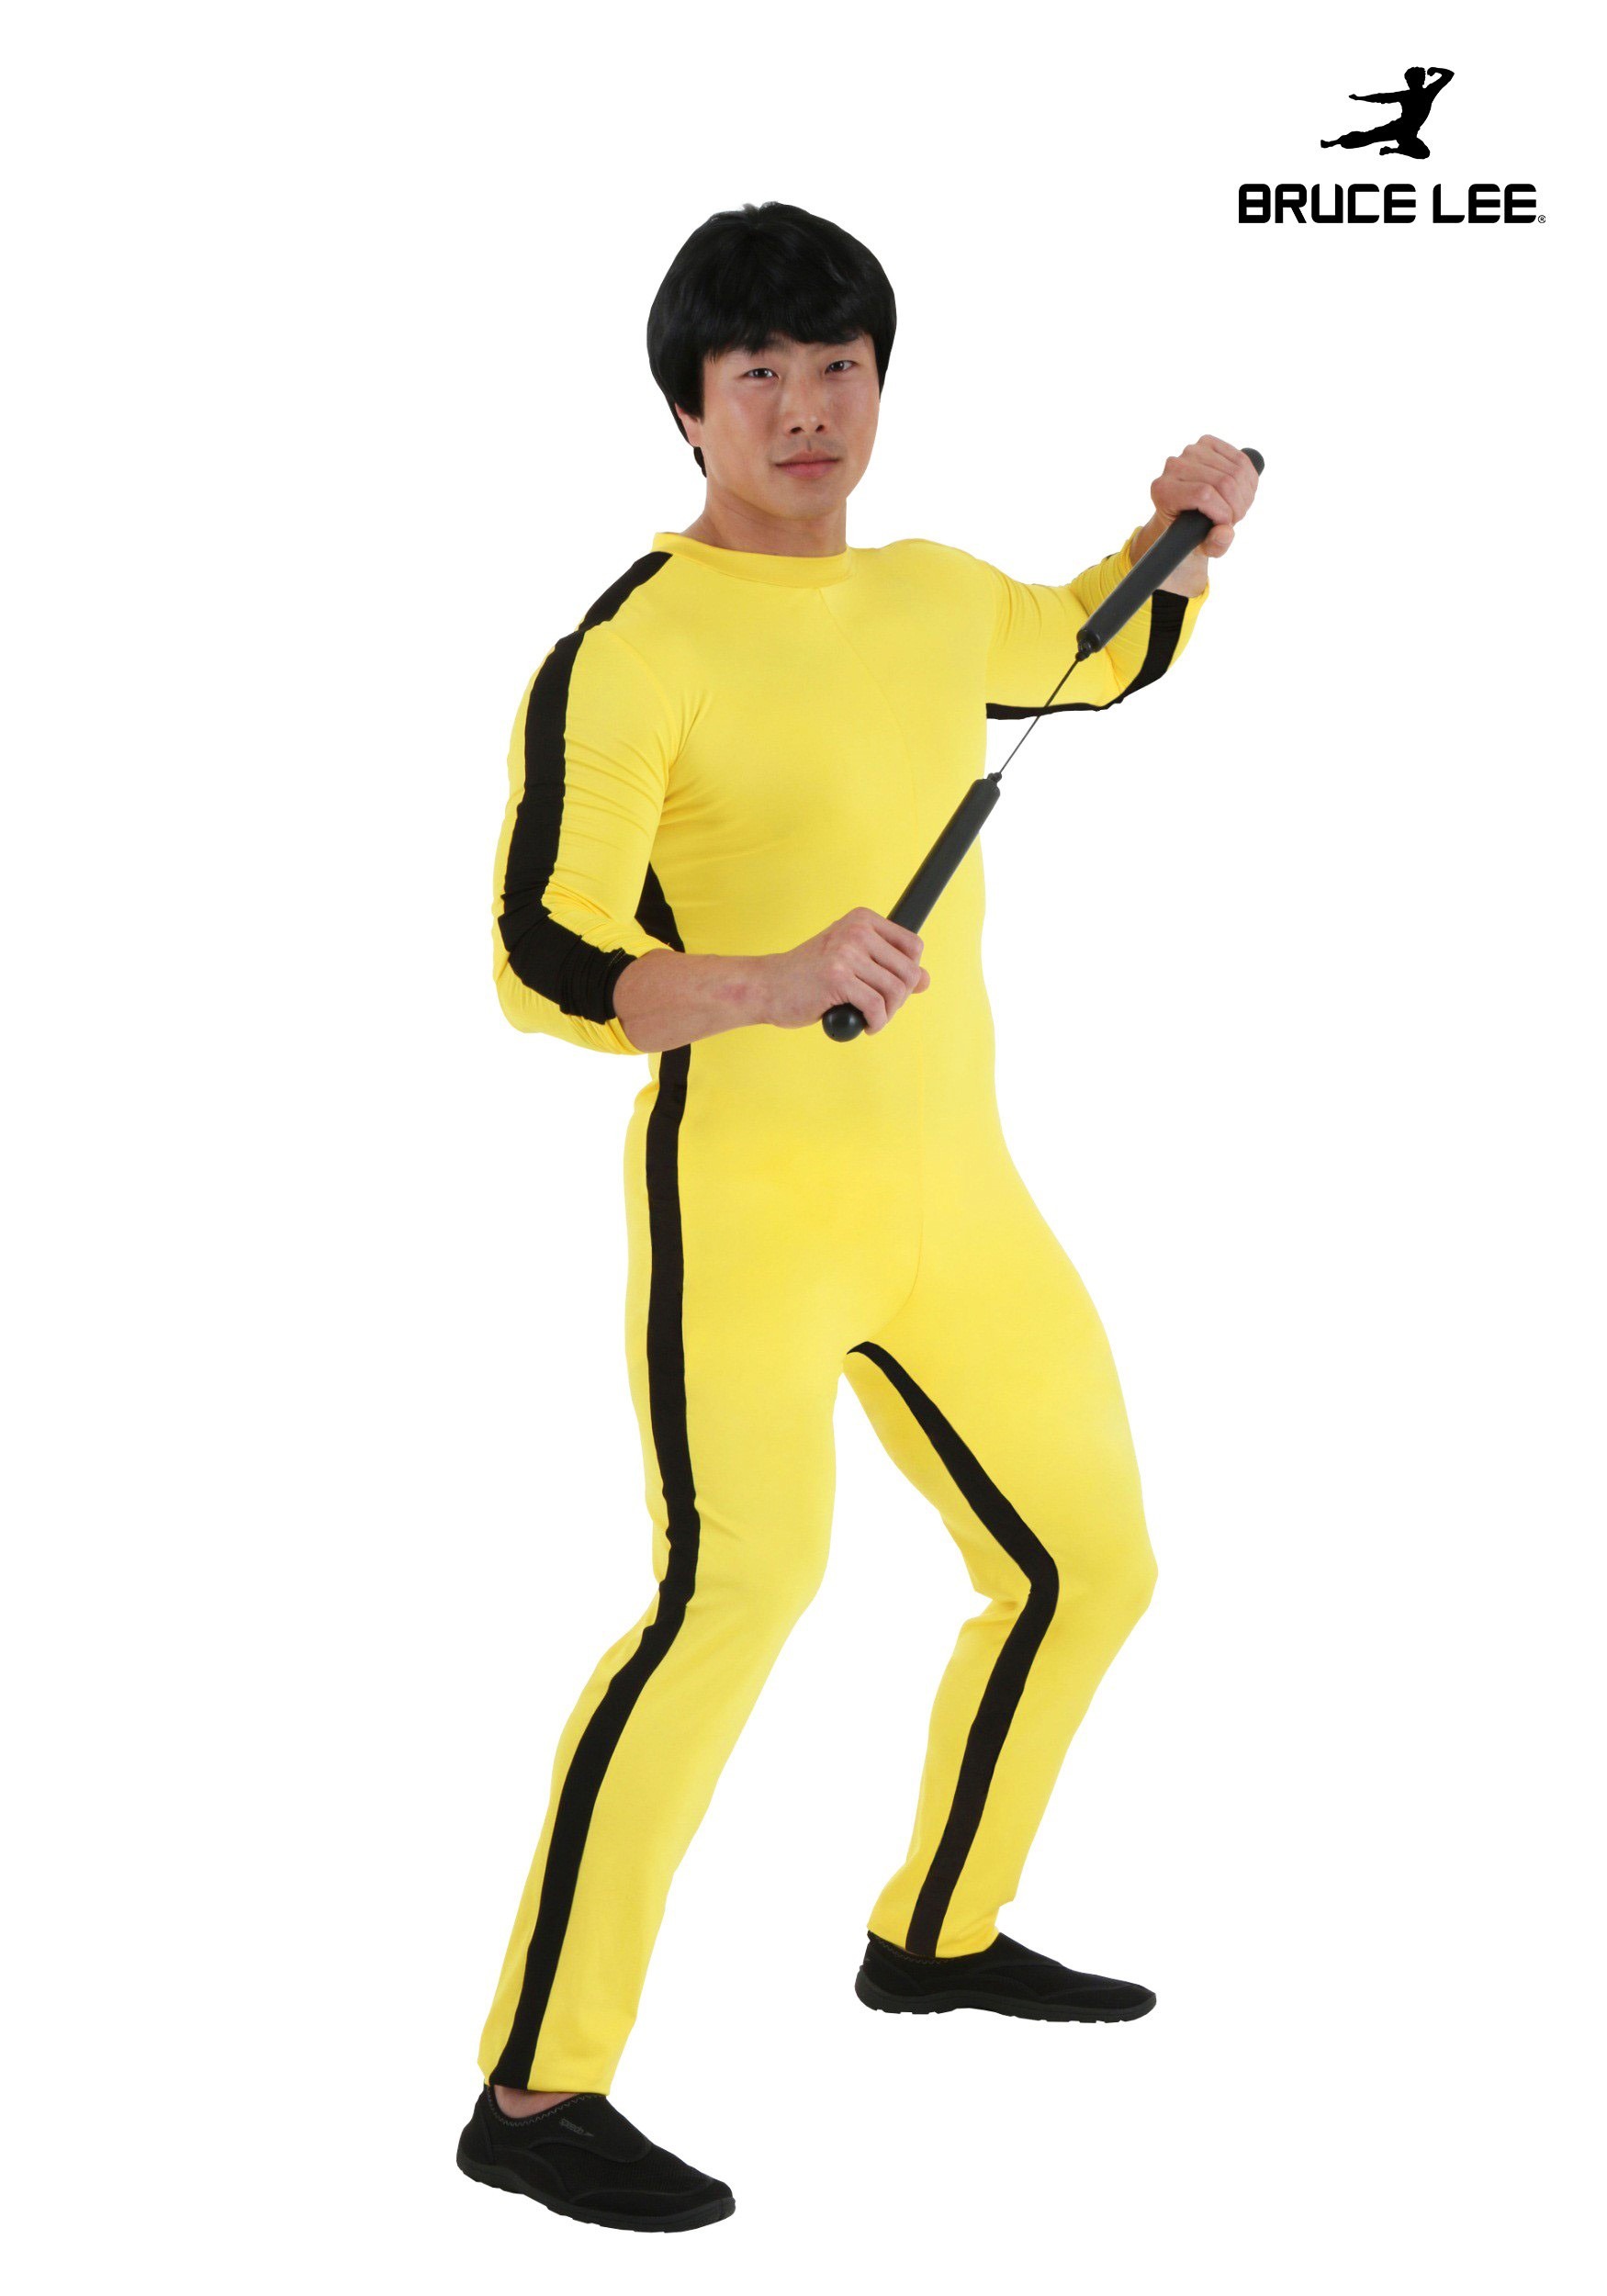 Ciro Vleien aanplakbiljet Bruce Lee Men's Costume